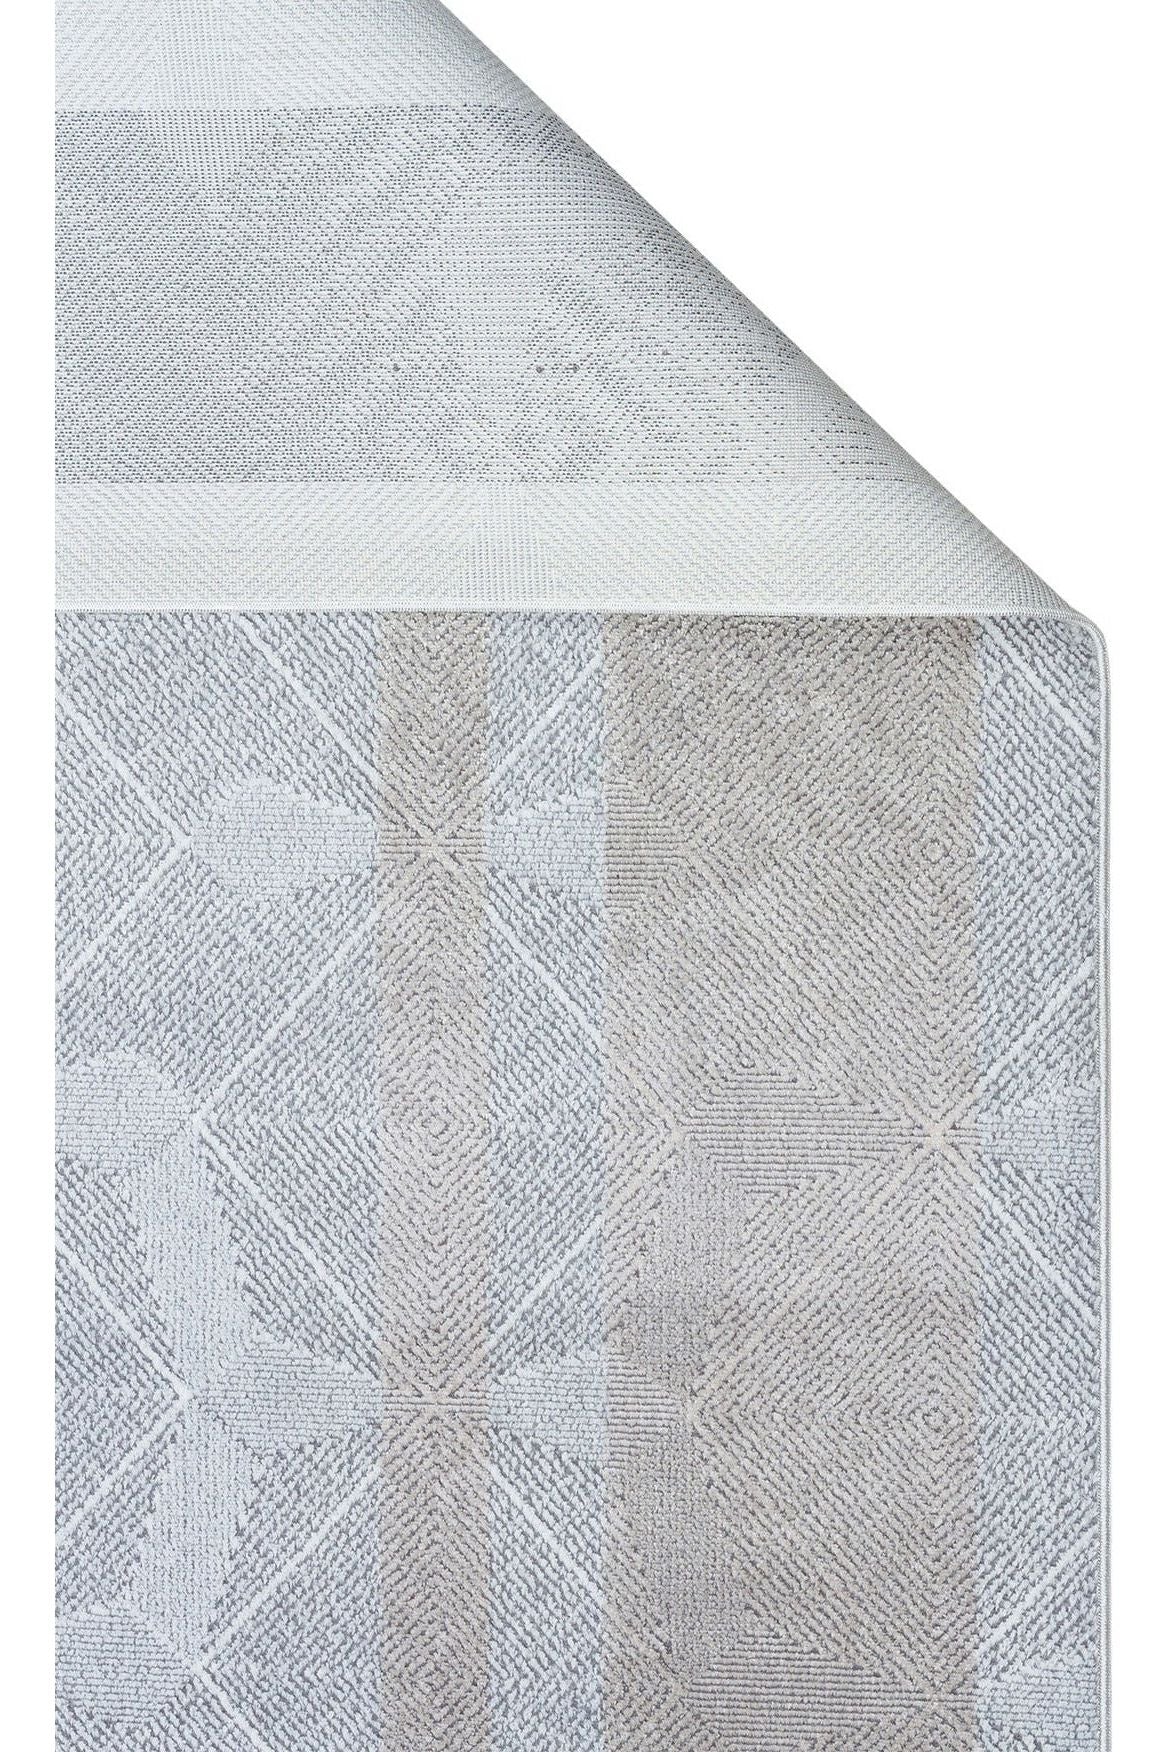 #Turkish_Carpets_Rugs# #Modern_Carpets# #Abrash_Carpets#Blv 01 Grey Beige